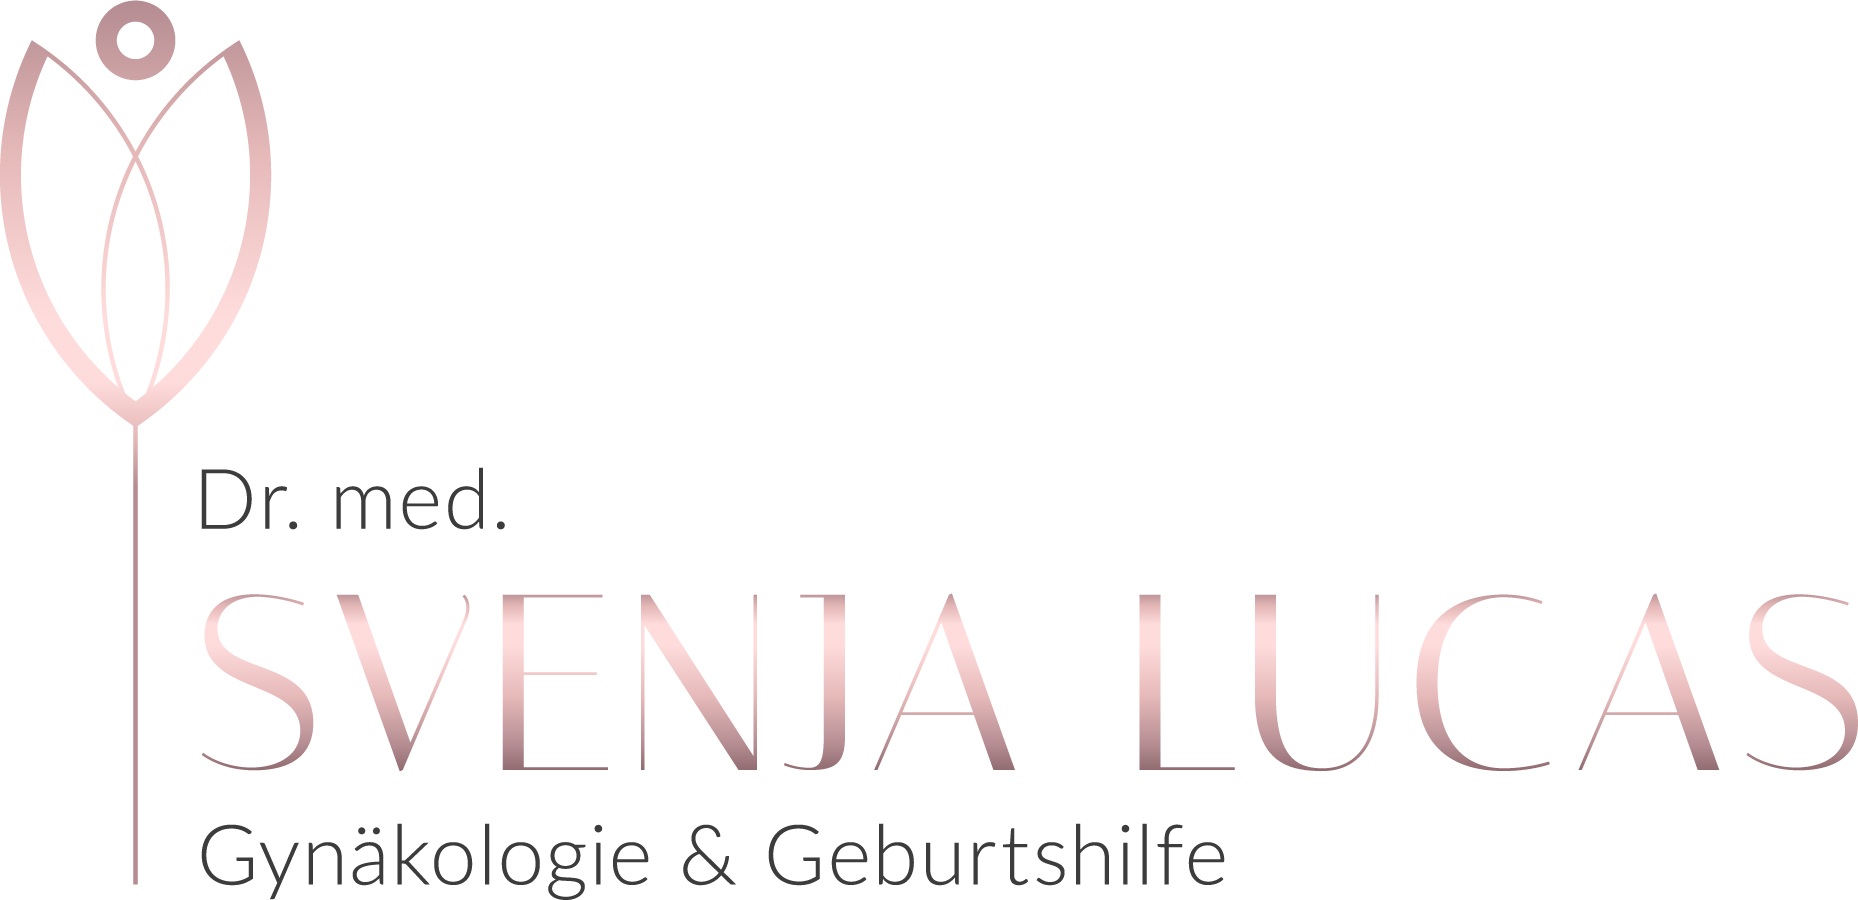 Dr. med. Svenja Lucas – Fachärztin für Gynäkologie und Geburtshilfe